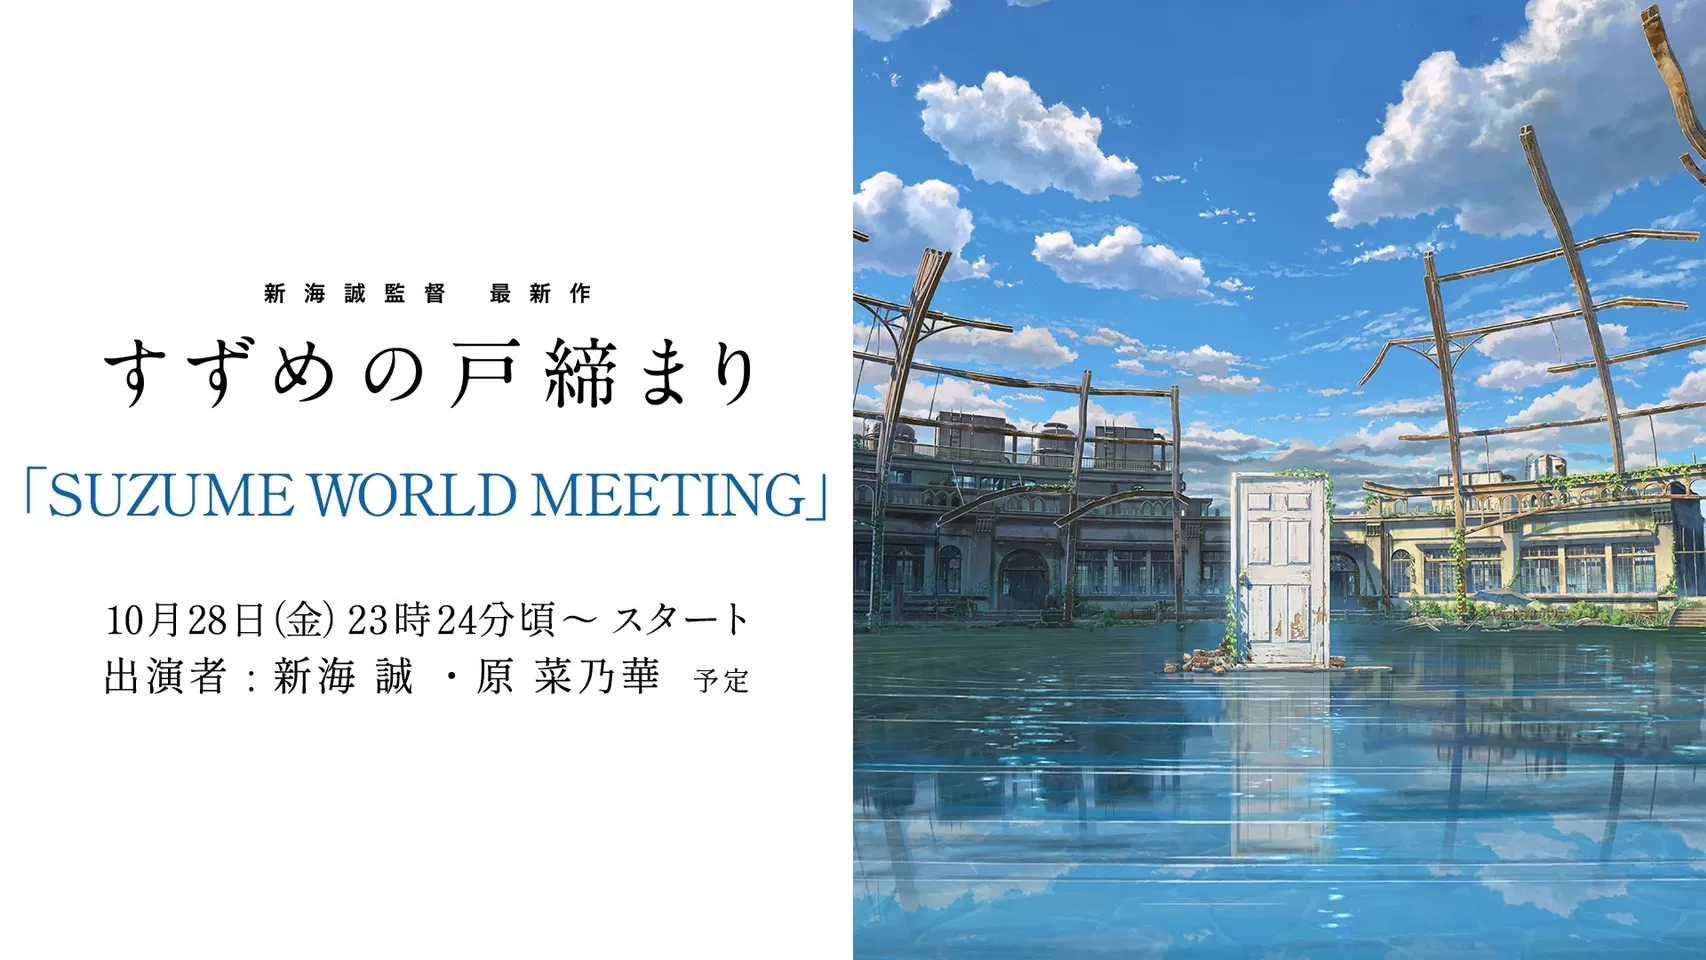 Suzume World Meeting